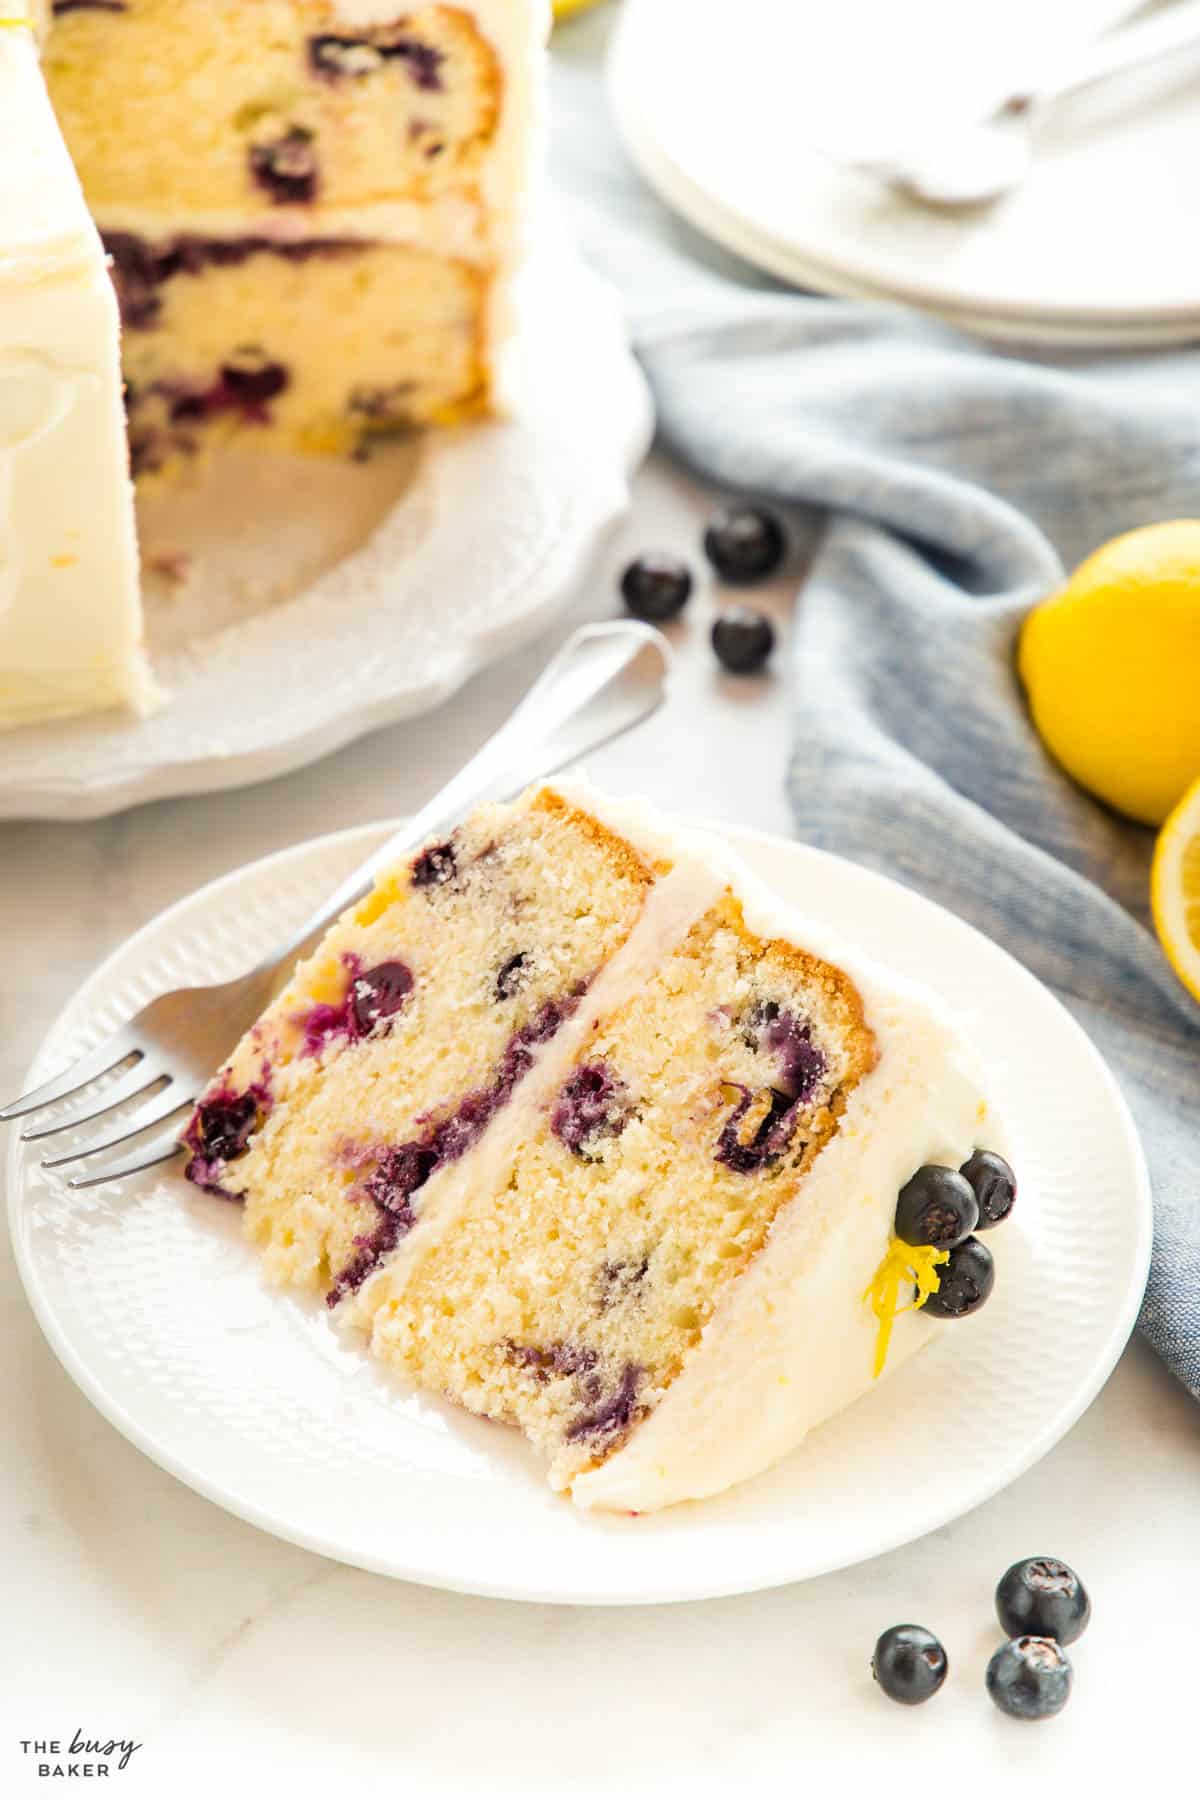 slice of lemon cake with fresh blueberries